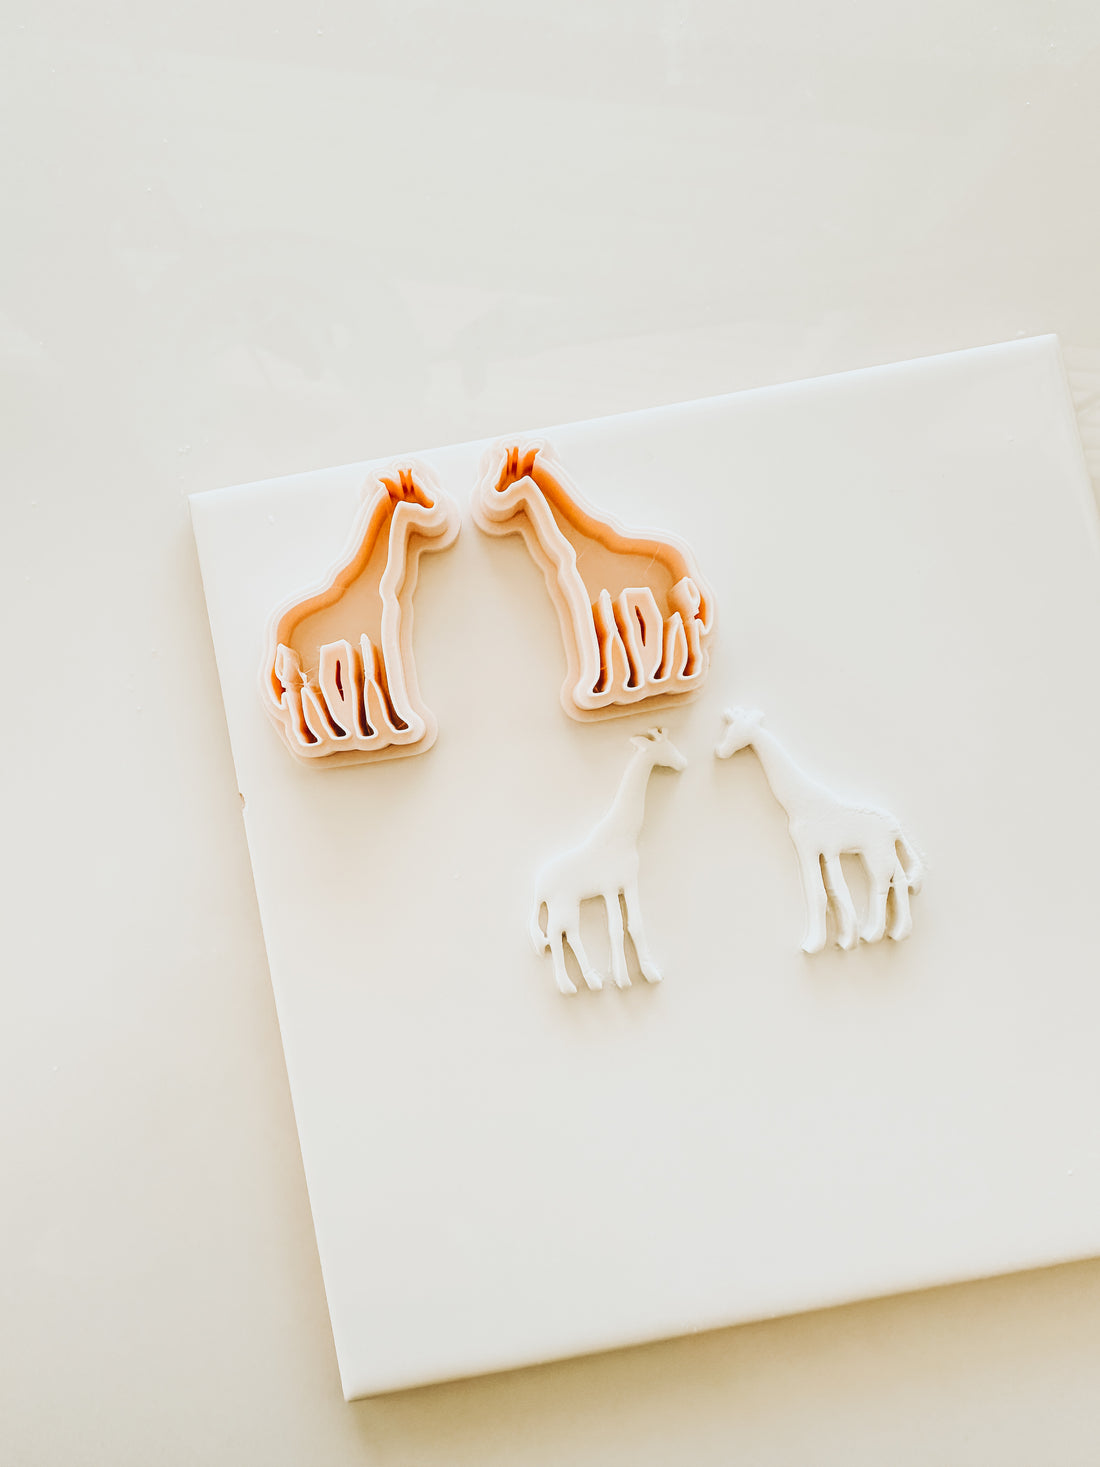 Giraffe Mirrored Clay Cutter Set - 1.50”